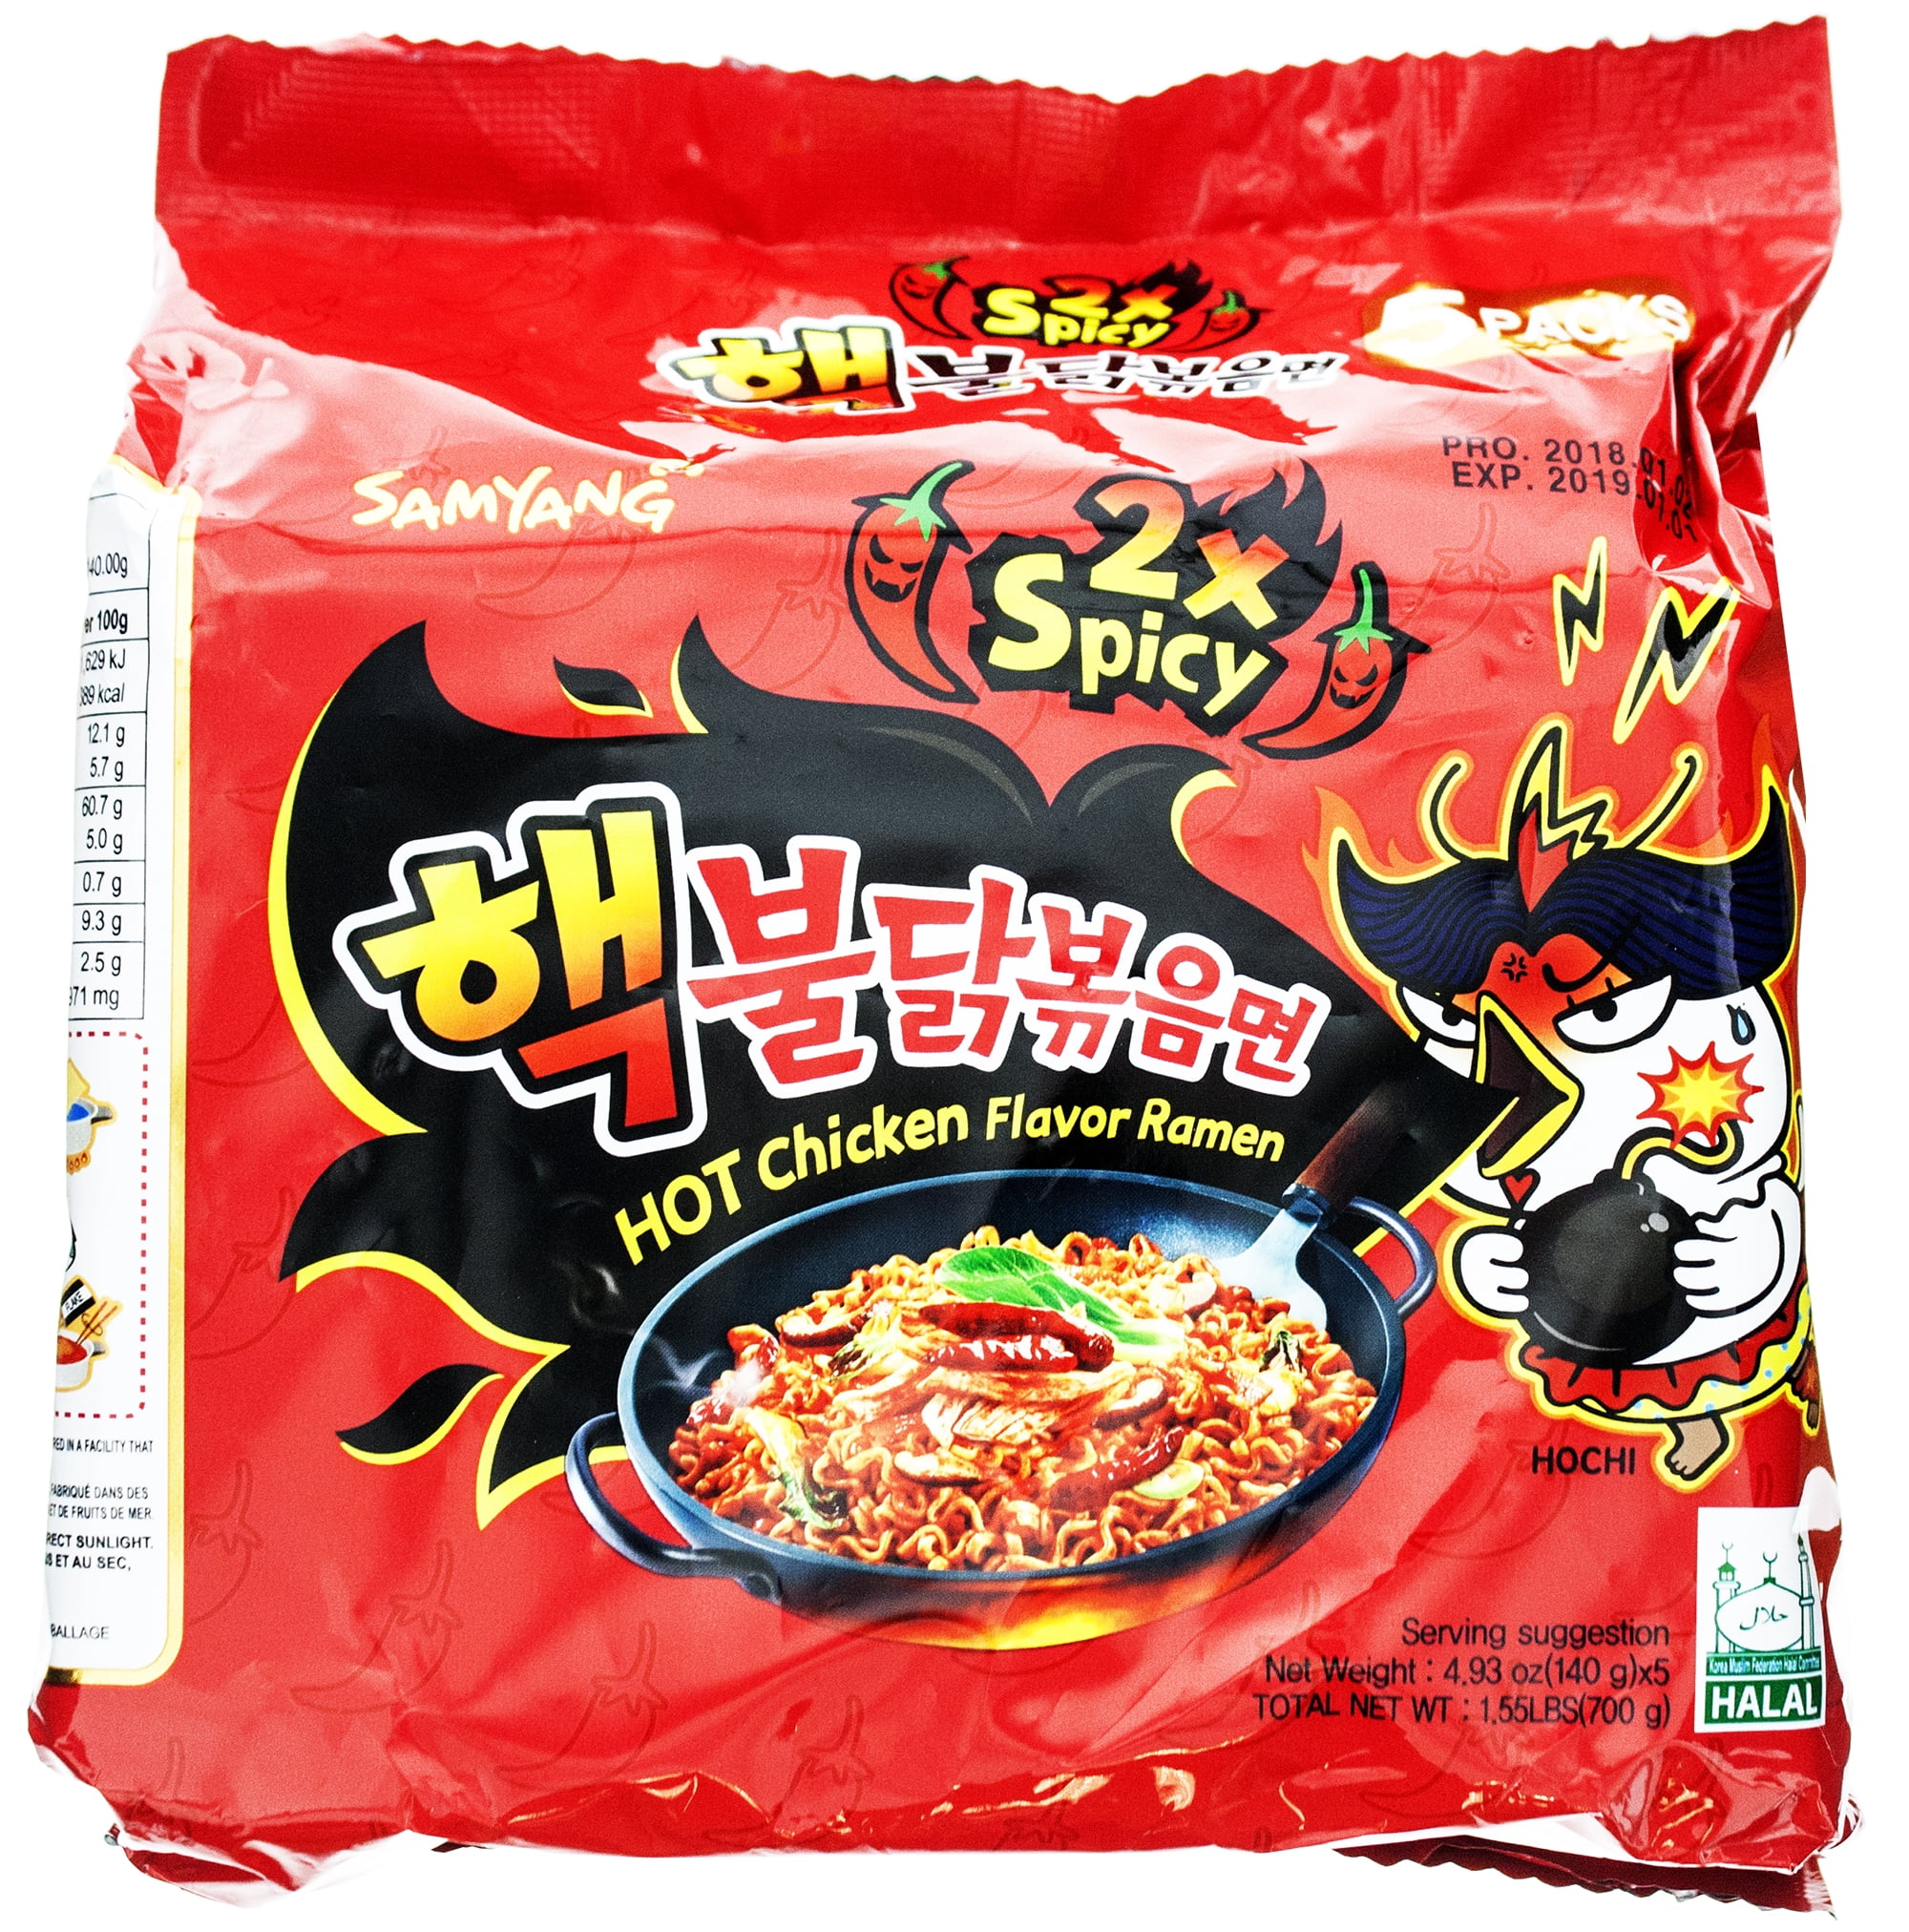 Væve Asser skille sig ud 5 Packs) Samyang 2x Spicy Hot Chicken Flavor Instant Ramen, 4.93 oz -  Walmart.com